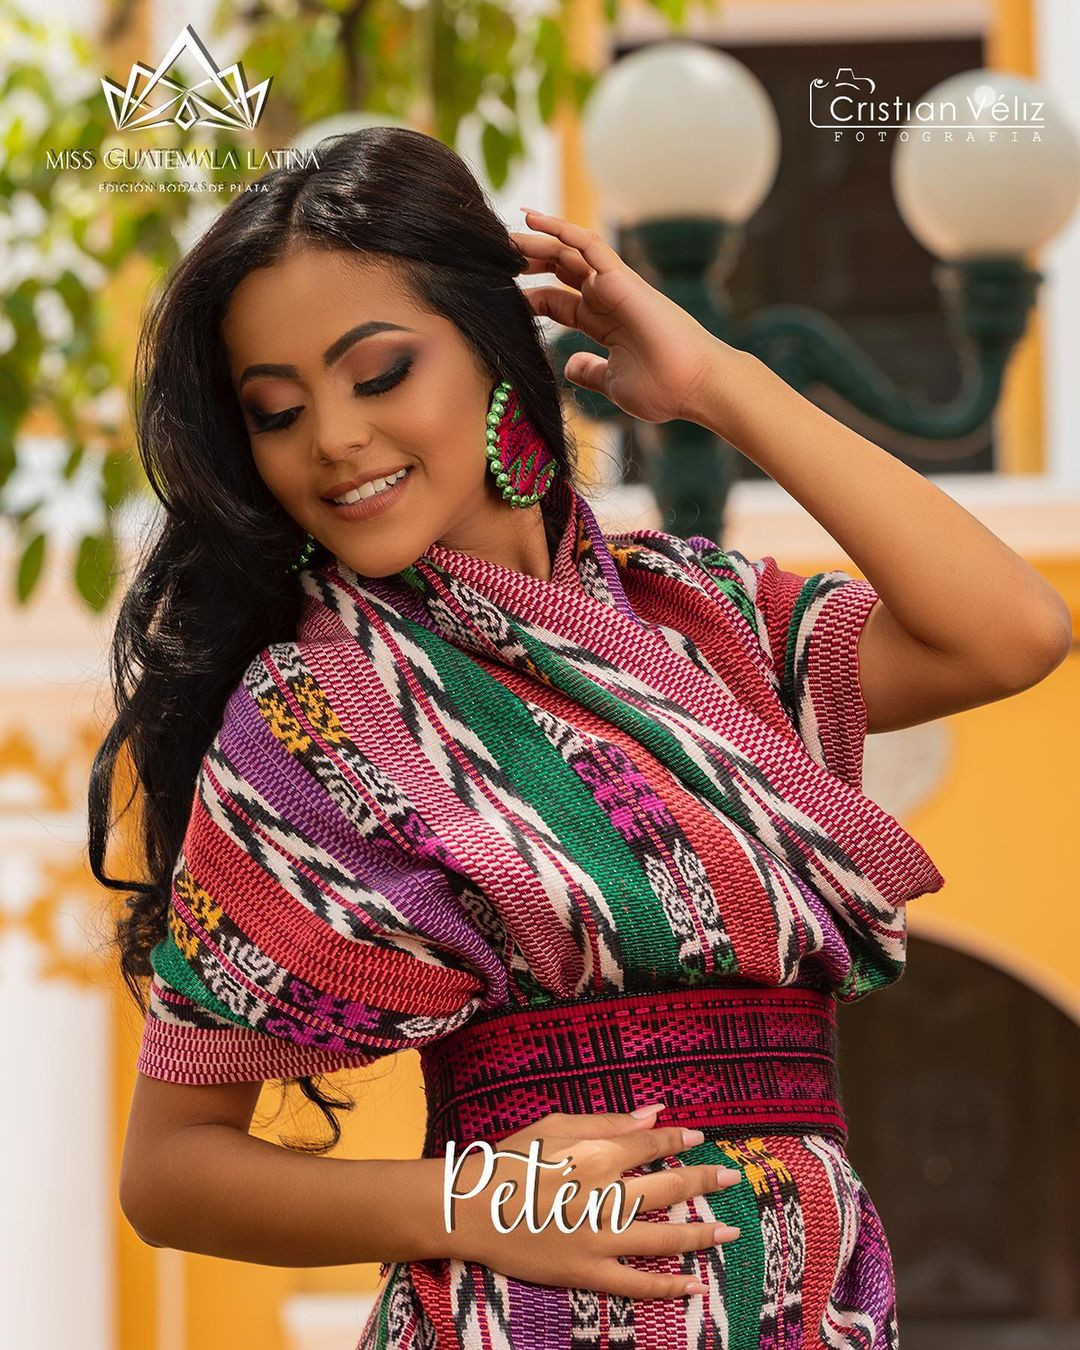 Latina - candidatas a miss guatemala latina 2021. final: 30 de abril. - Página 2 B2gU2R